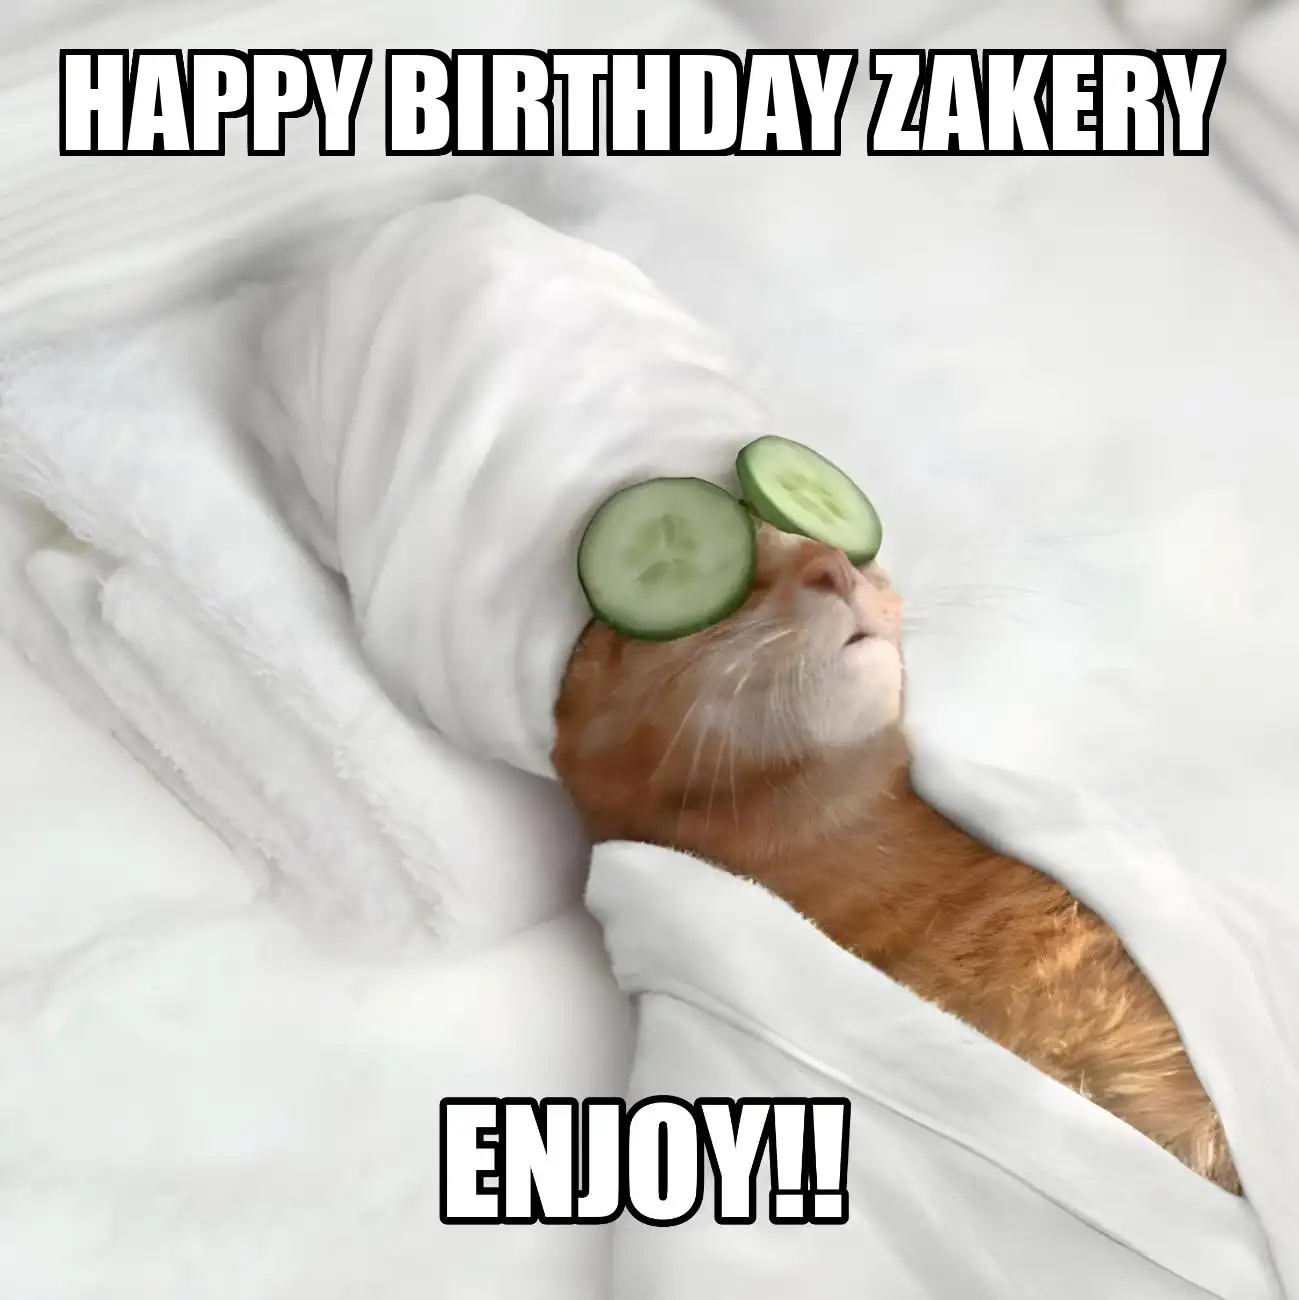 Happy Birthday Zakery Enjoy Cat Meme